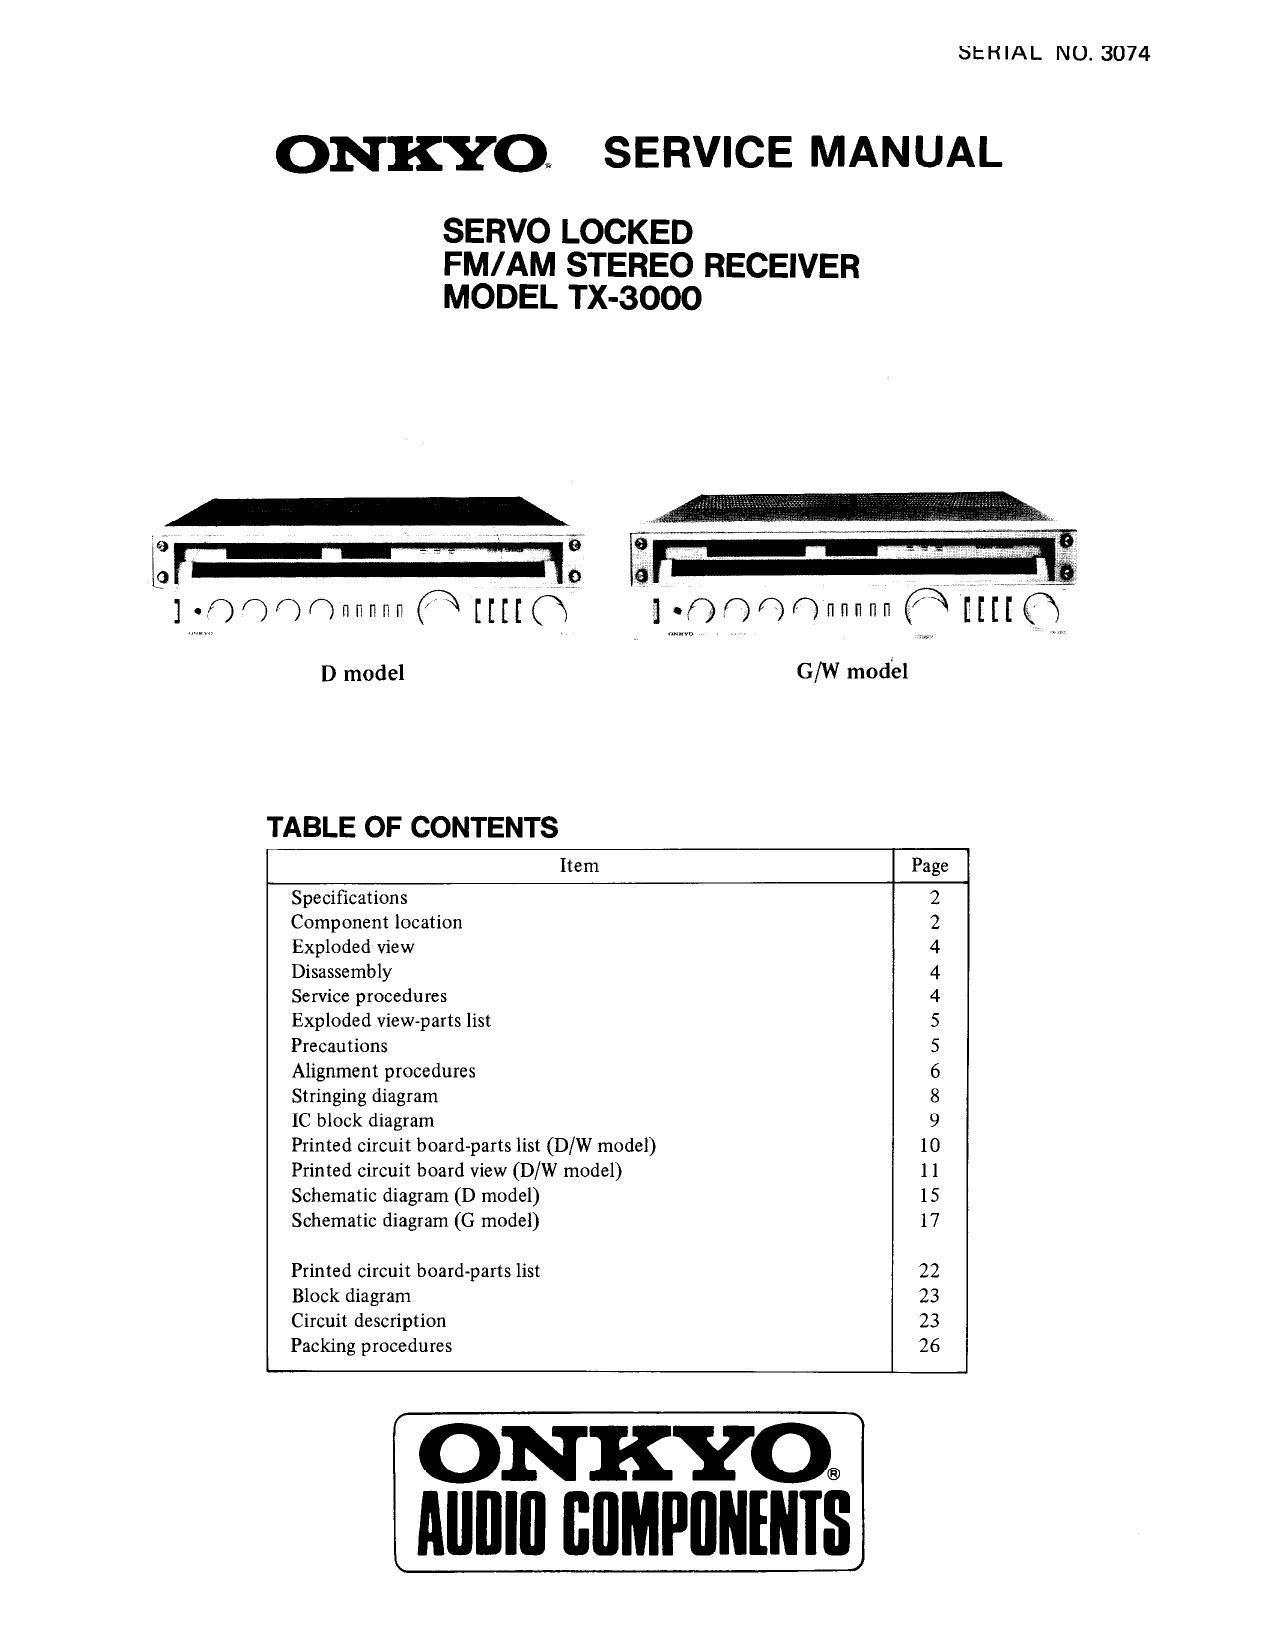 Onkyo TX 3000 Service Manual